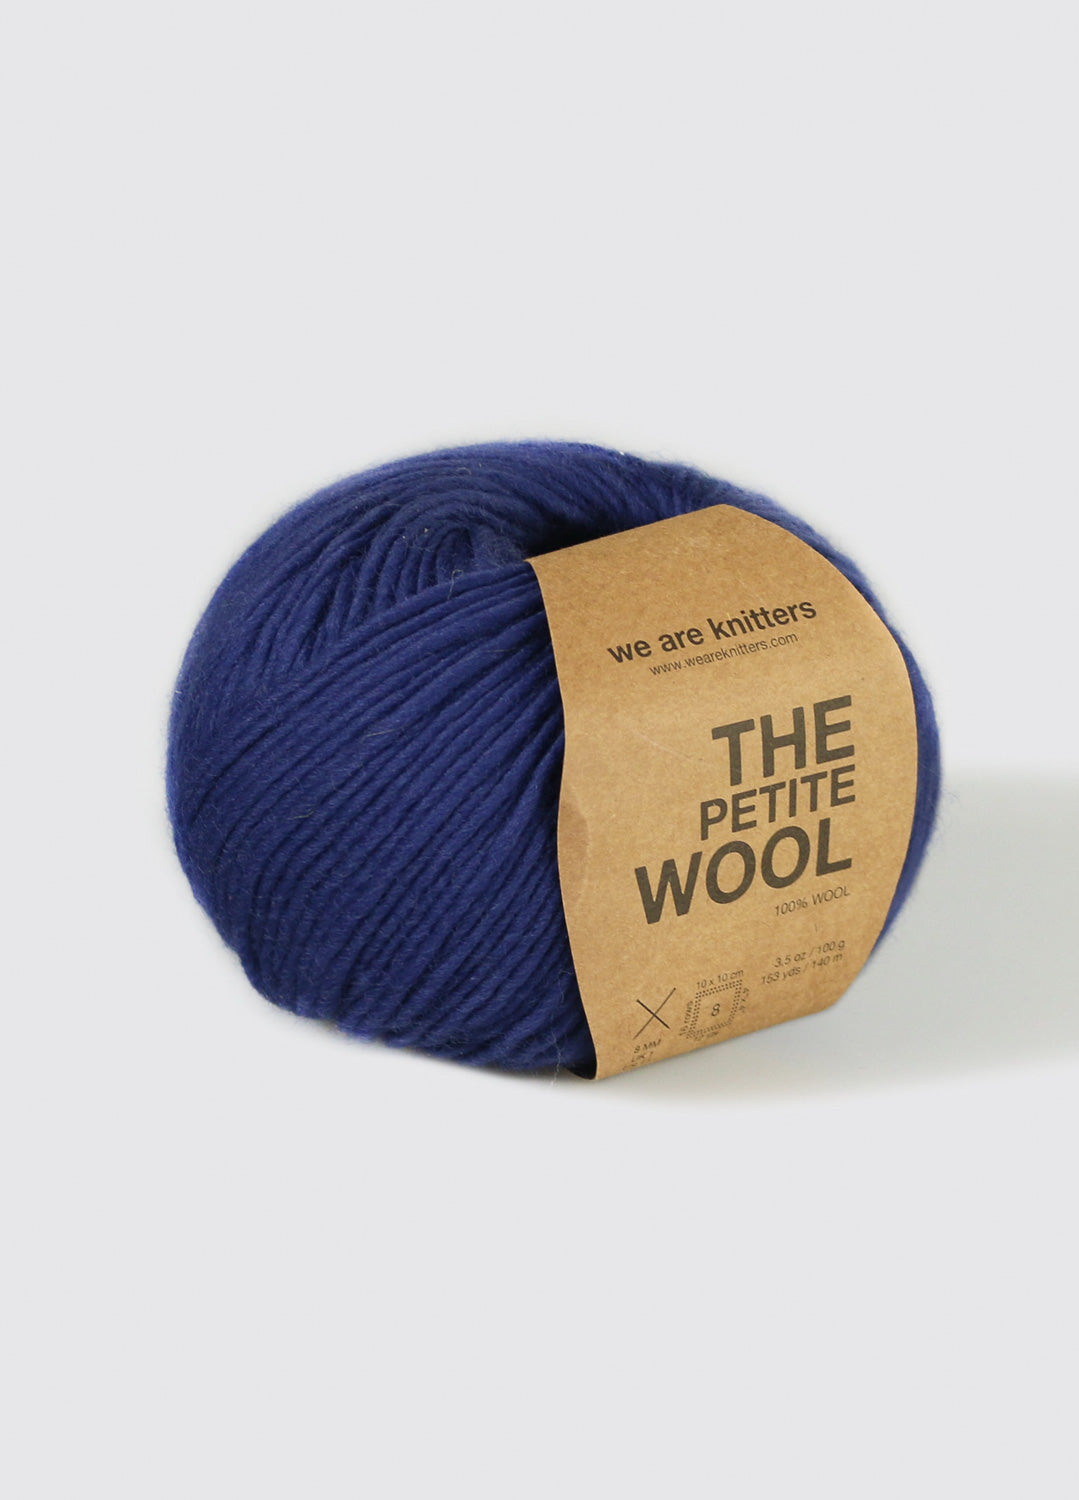 The Mixed Yarn Sky Blue – weareknitters